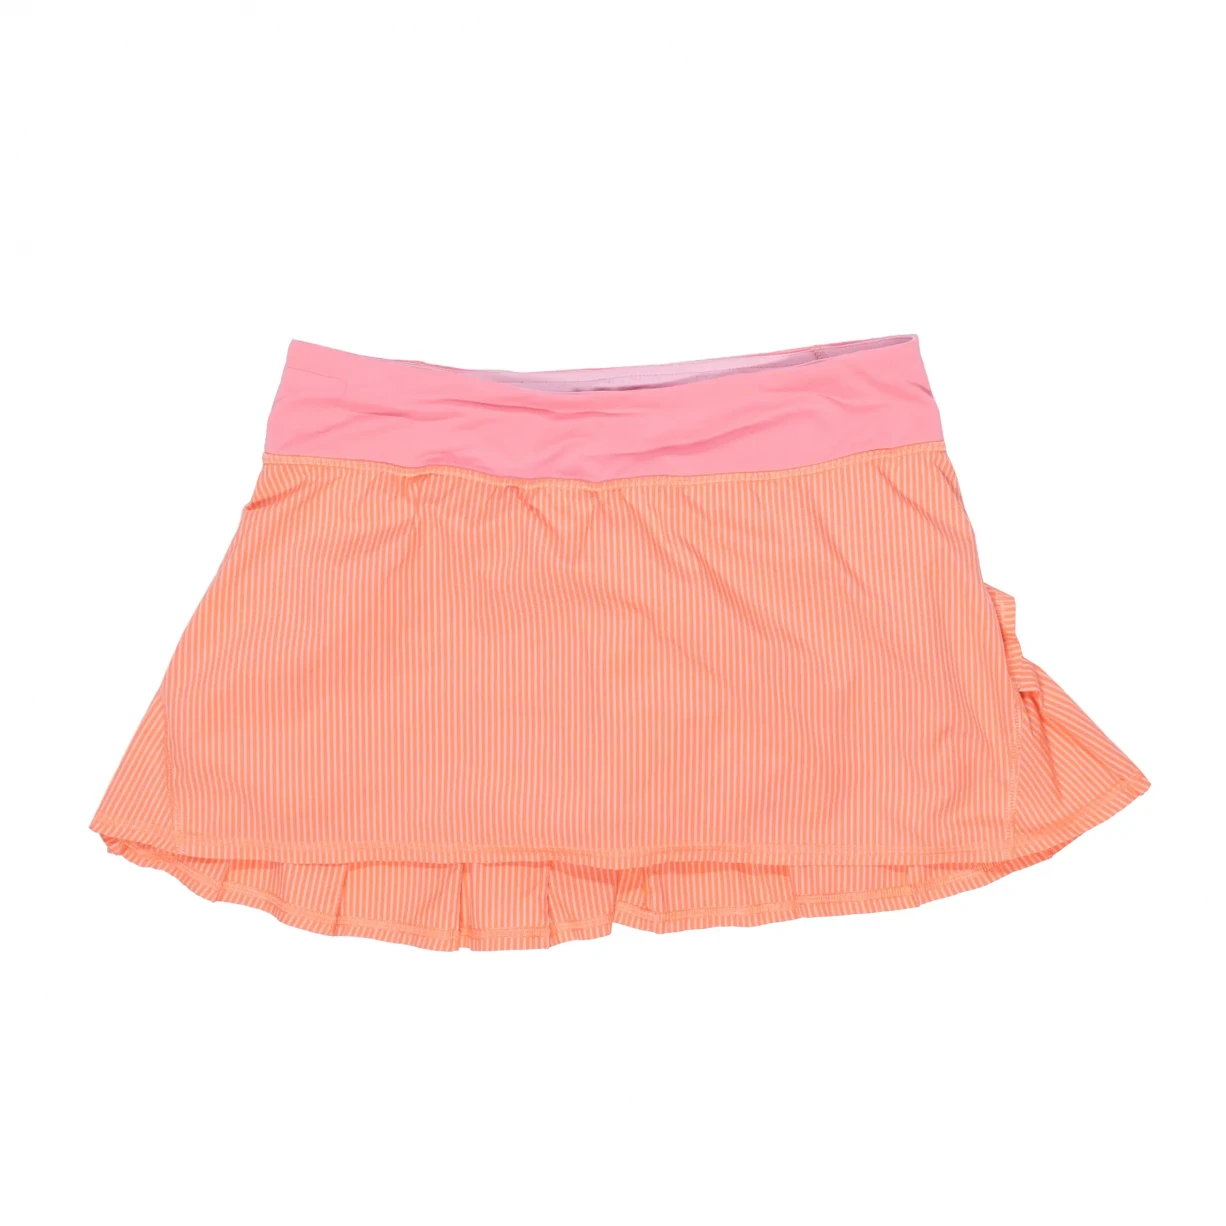 Item 888590 - Lululemon Run Pace Setter Skirt - Women's - Skor